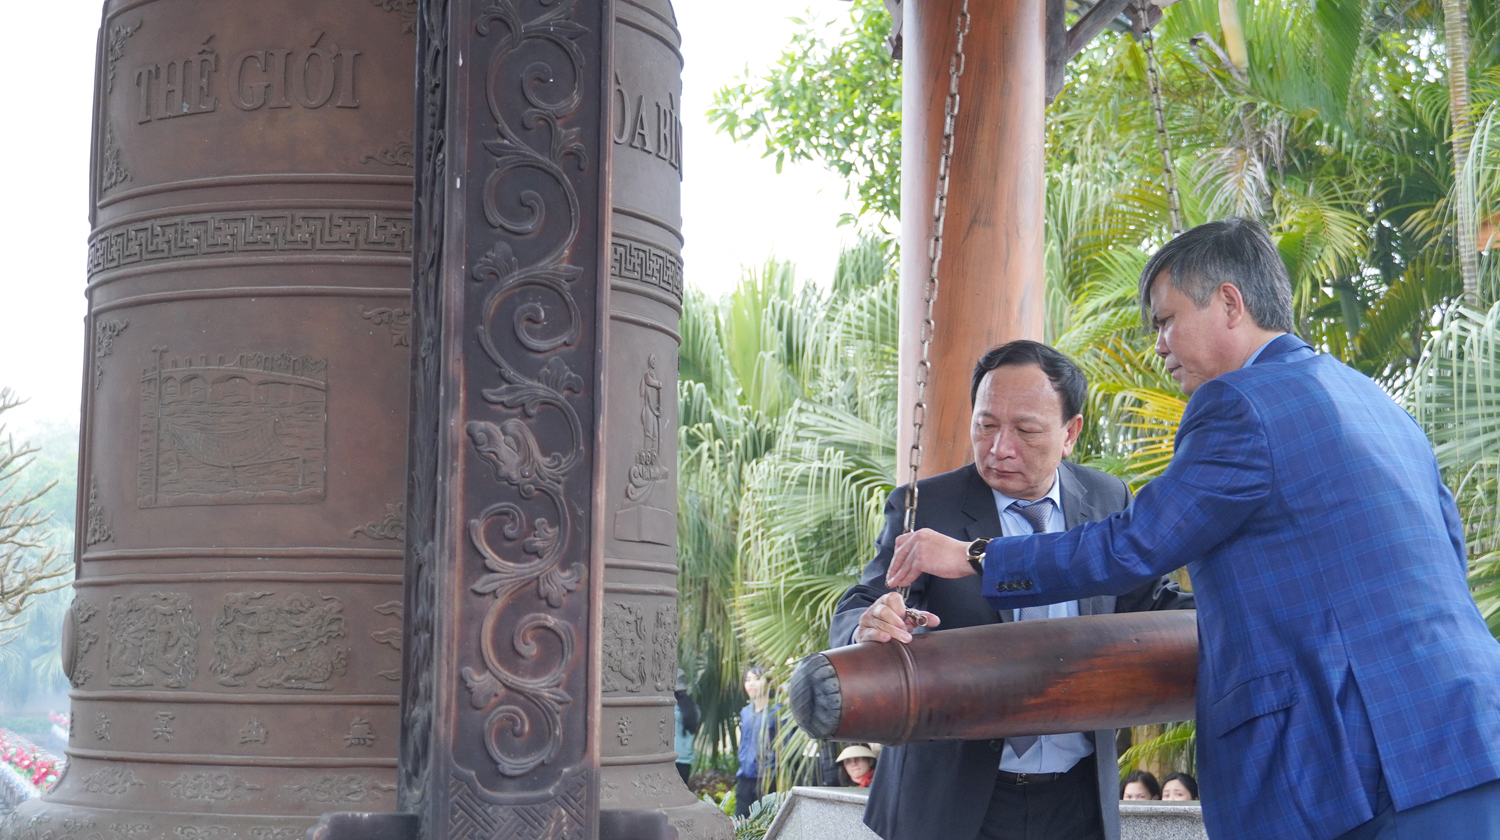 Đồng chí Phó Bí thư Thường trực Tỉnh ủy, Chủ tịch HĐND tỉnh Trần Hải Châu và đồng chí Chủ tịch UBND tỉnh Trần Thắng thực hiện nghi thức thỉnh chuông.